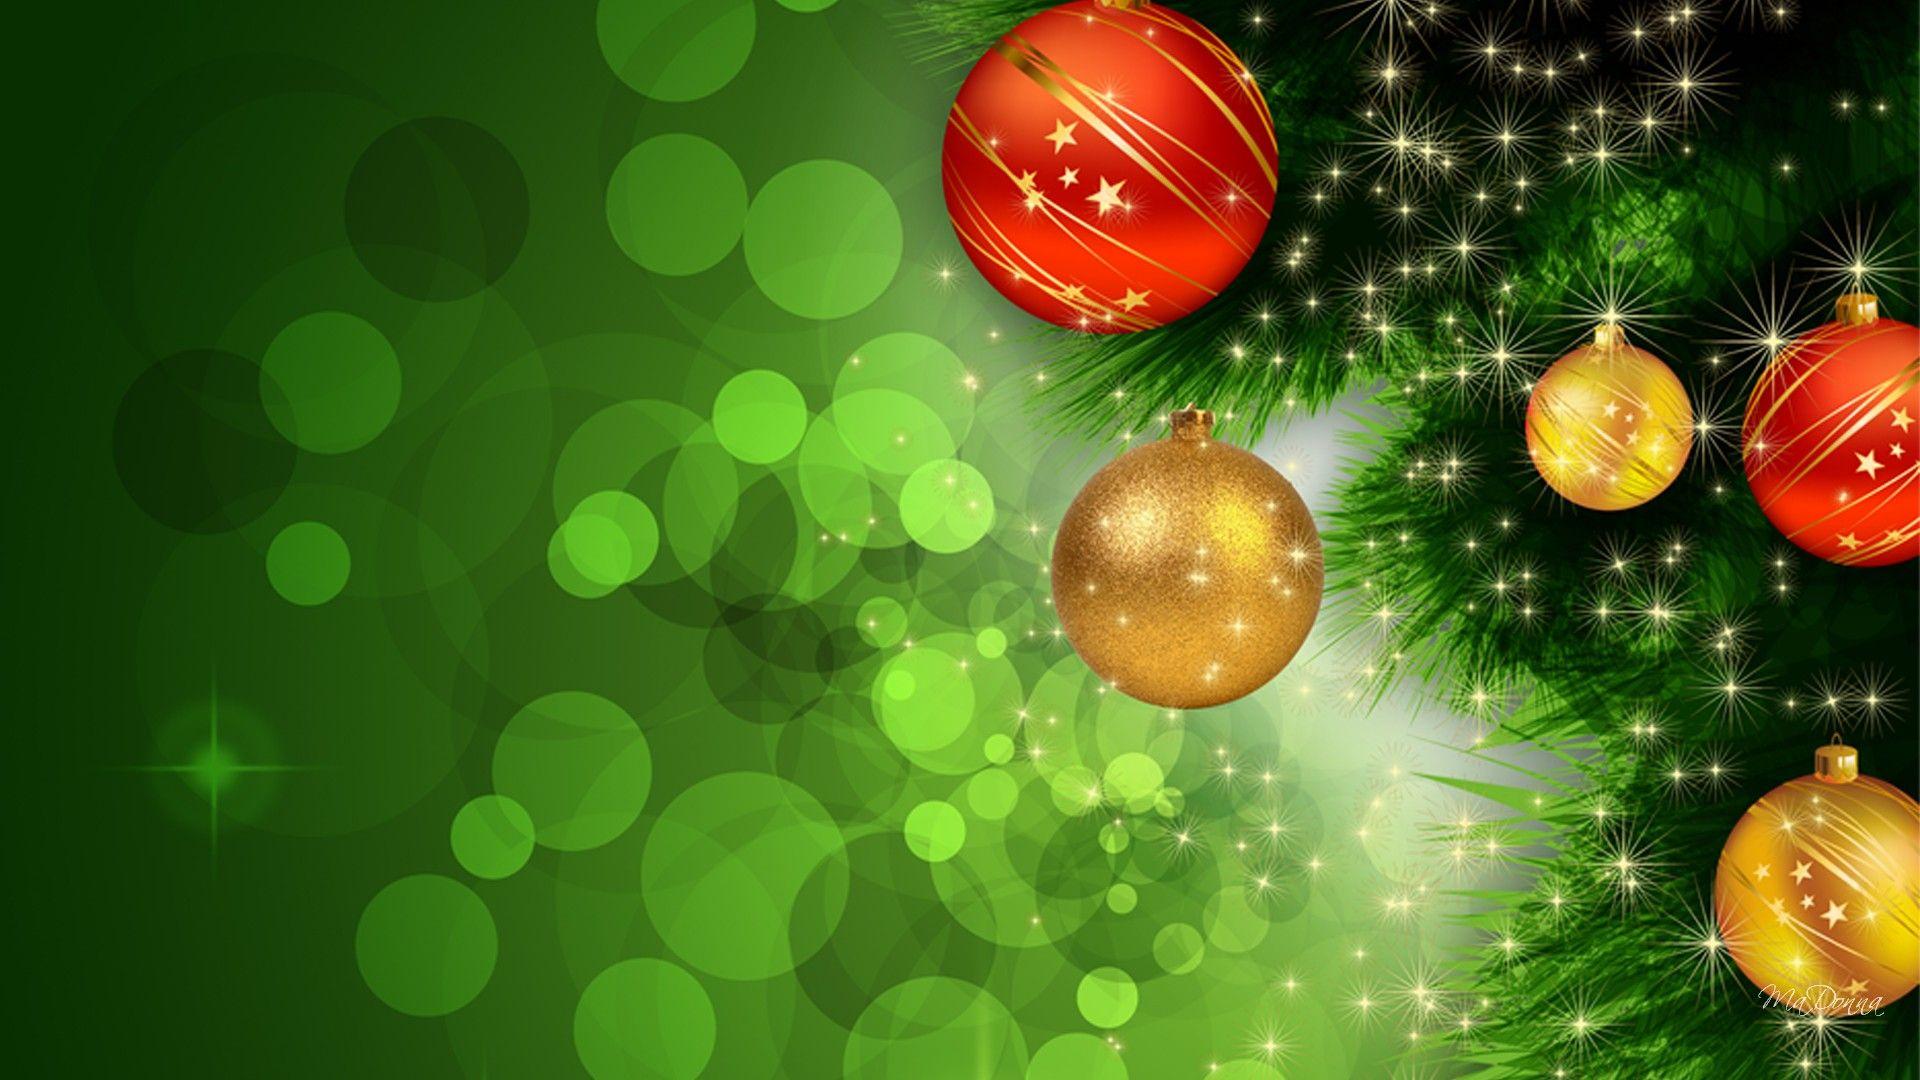 Green Christmas Wallpapers - Top Những Hình Ảnh Đẹp